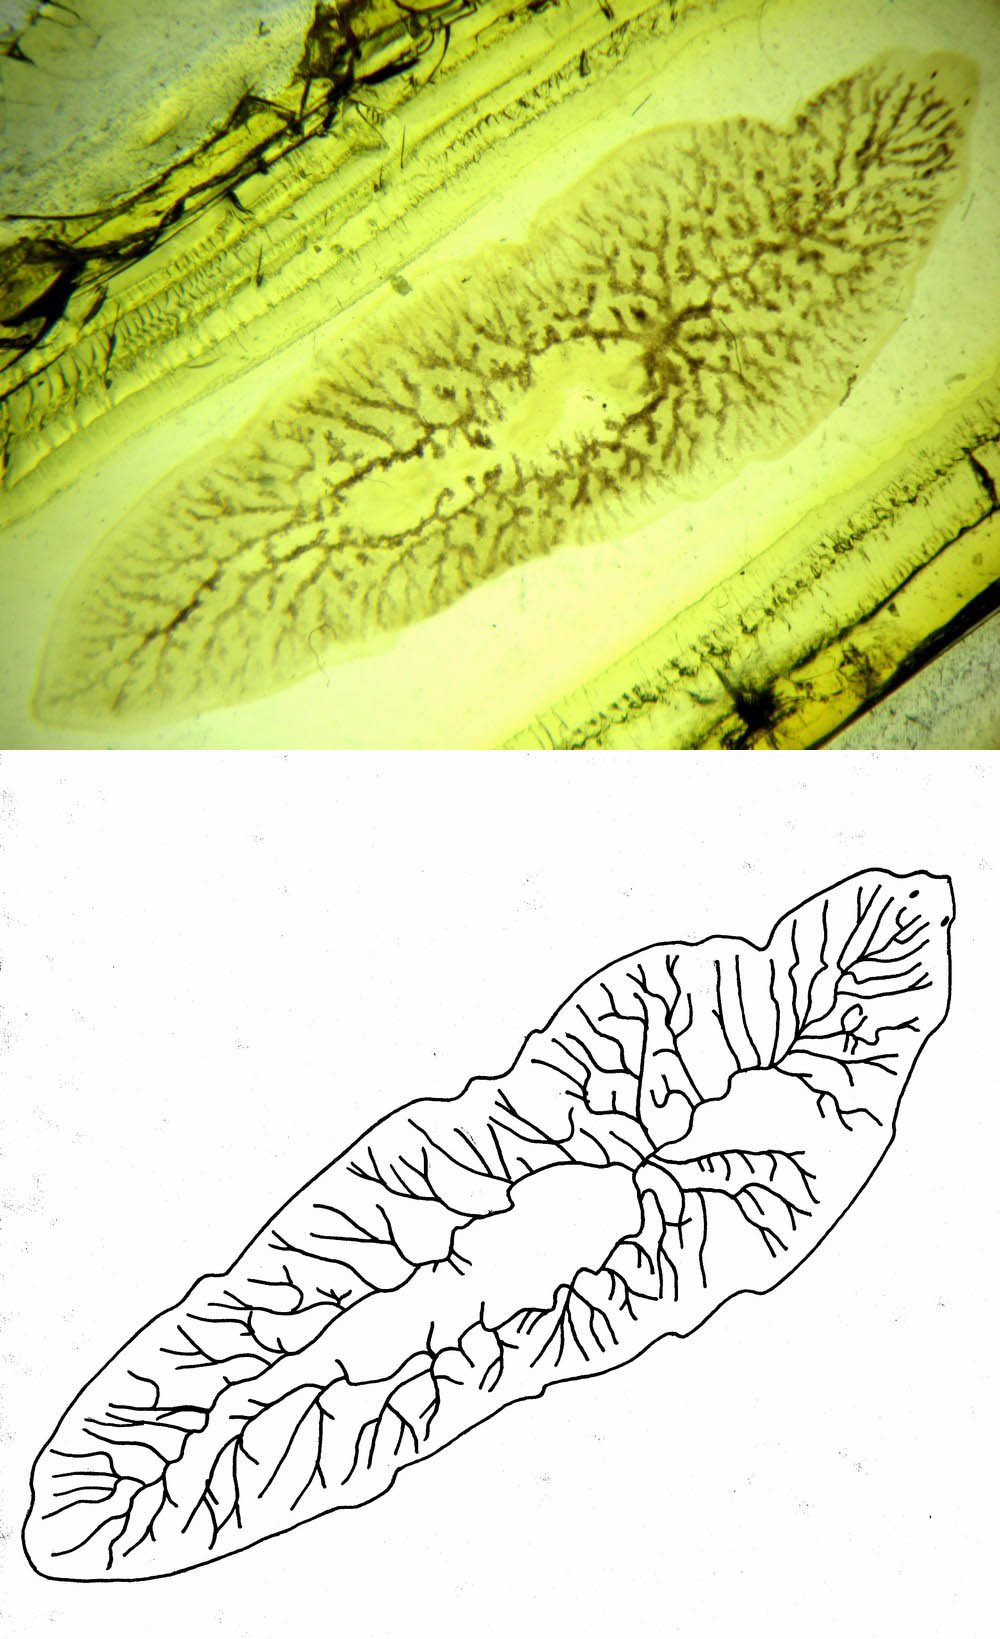 Dendrocoelum lacteum